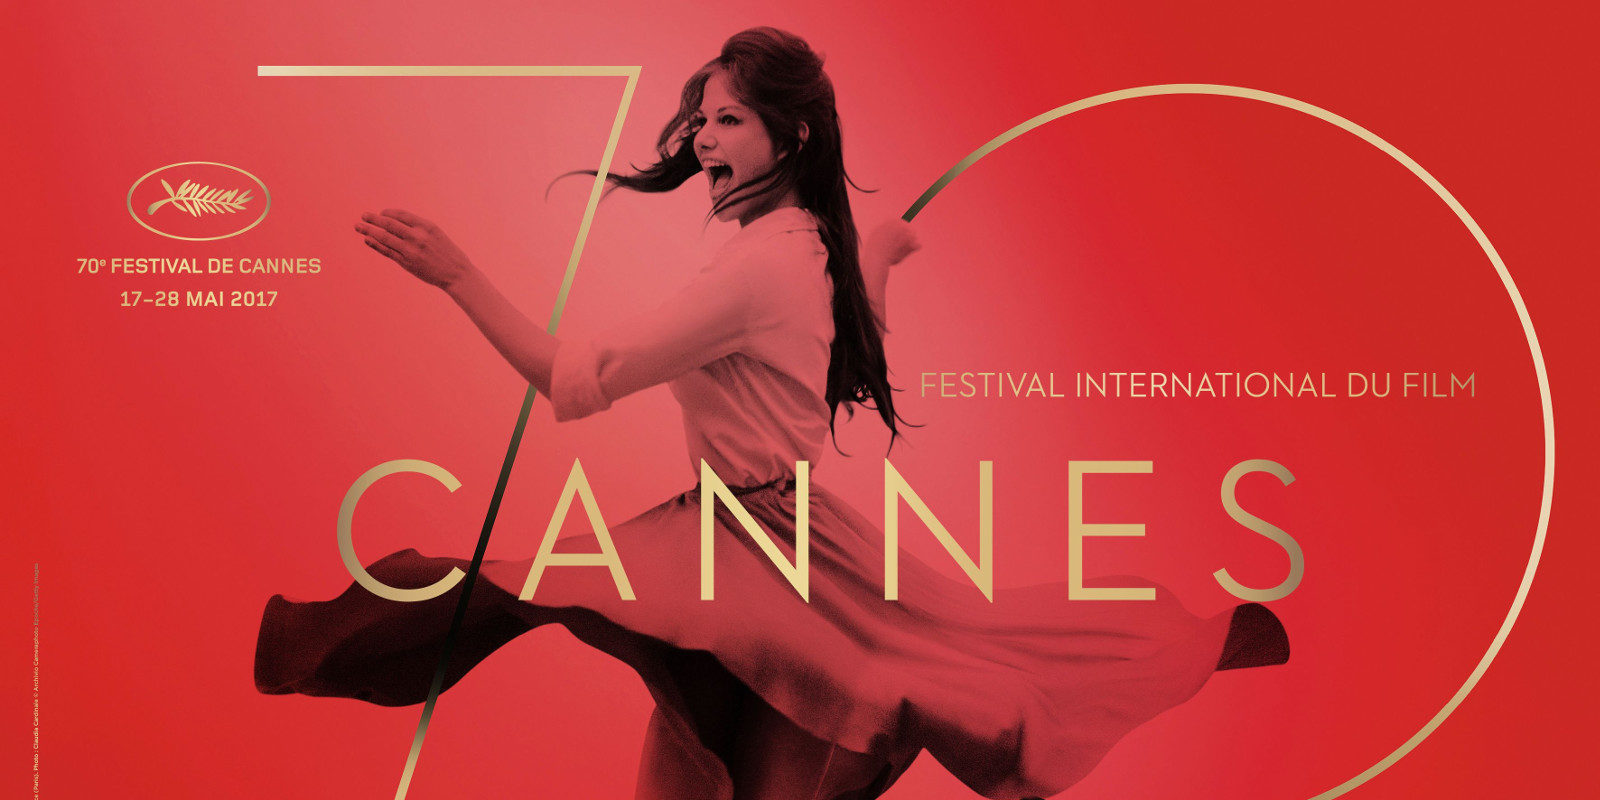 Festival de Cannes 2017: Lista completa de los ganadores